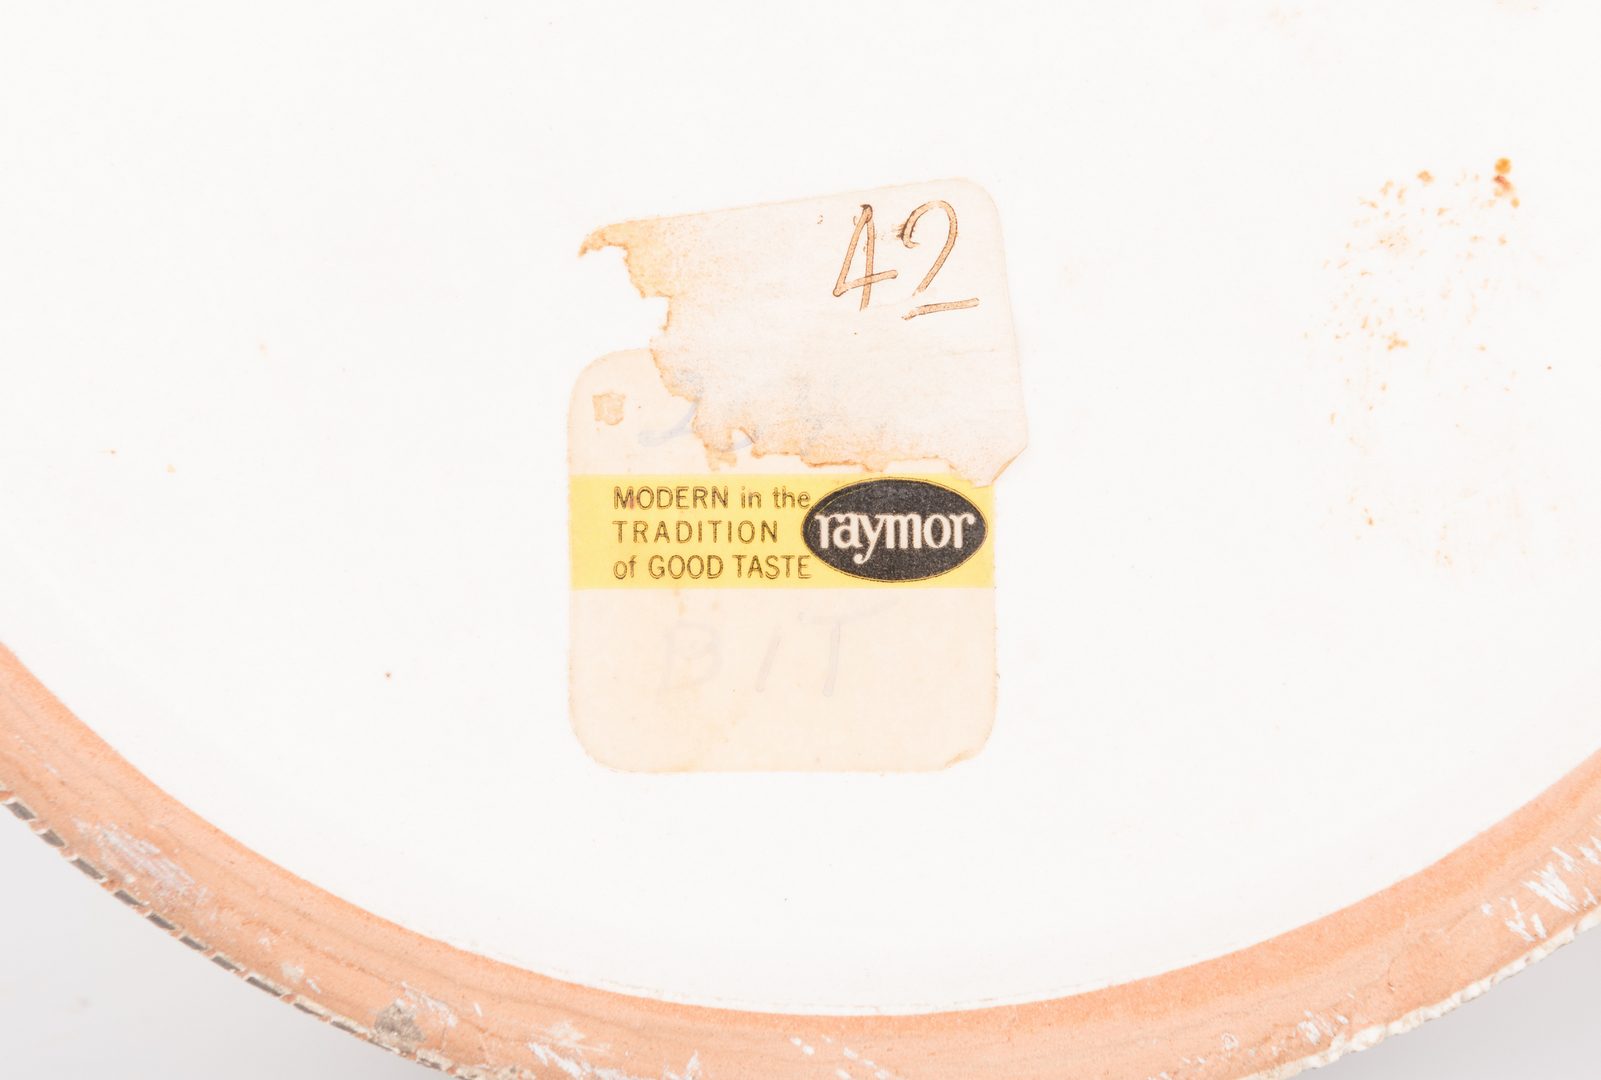 Lot 196: 2 Midcentury Ceramic Lidded Jars, Raymor